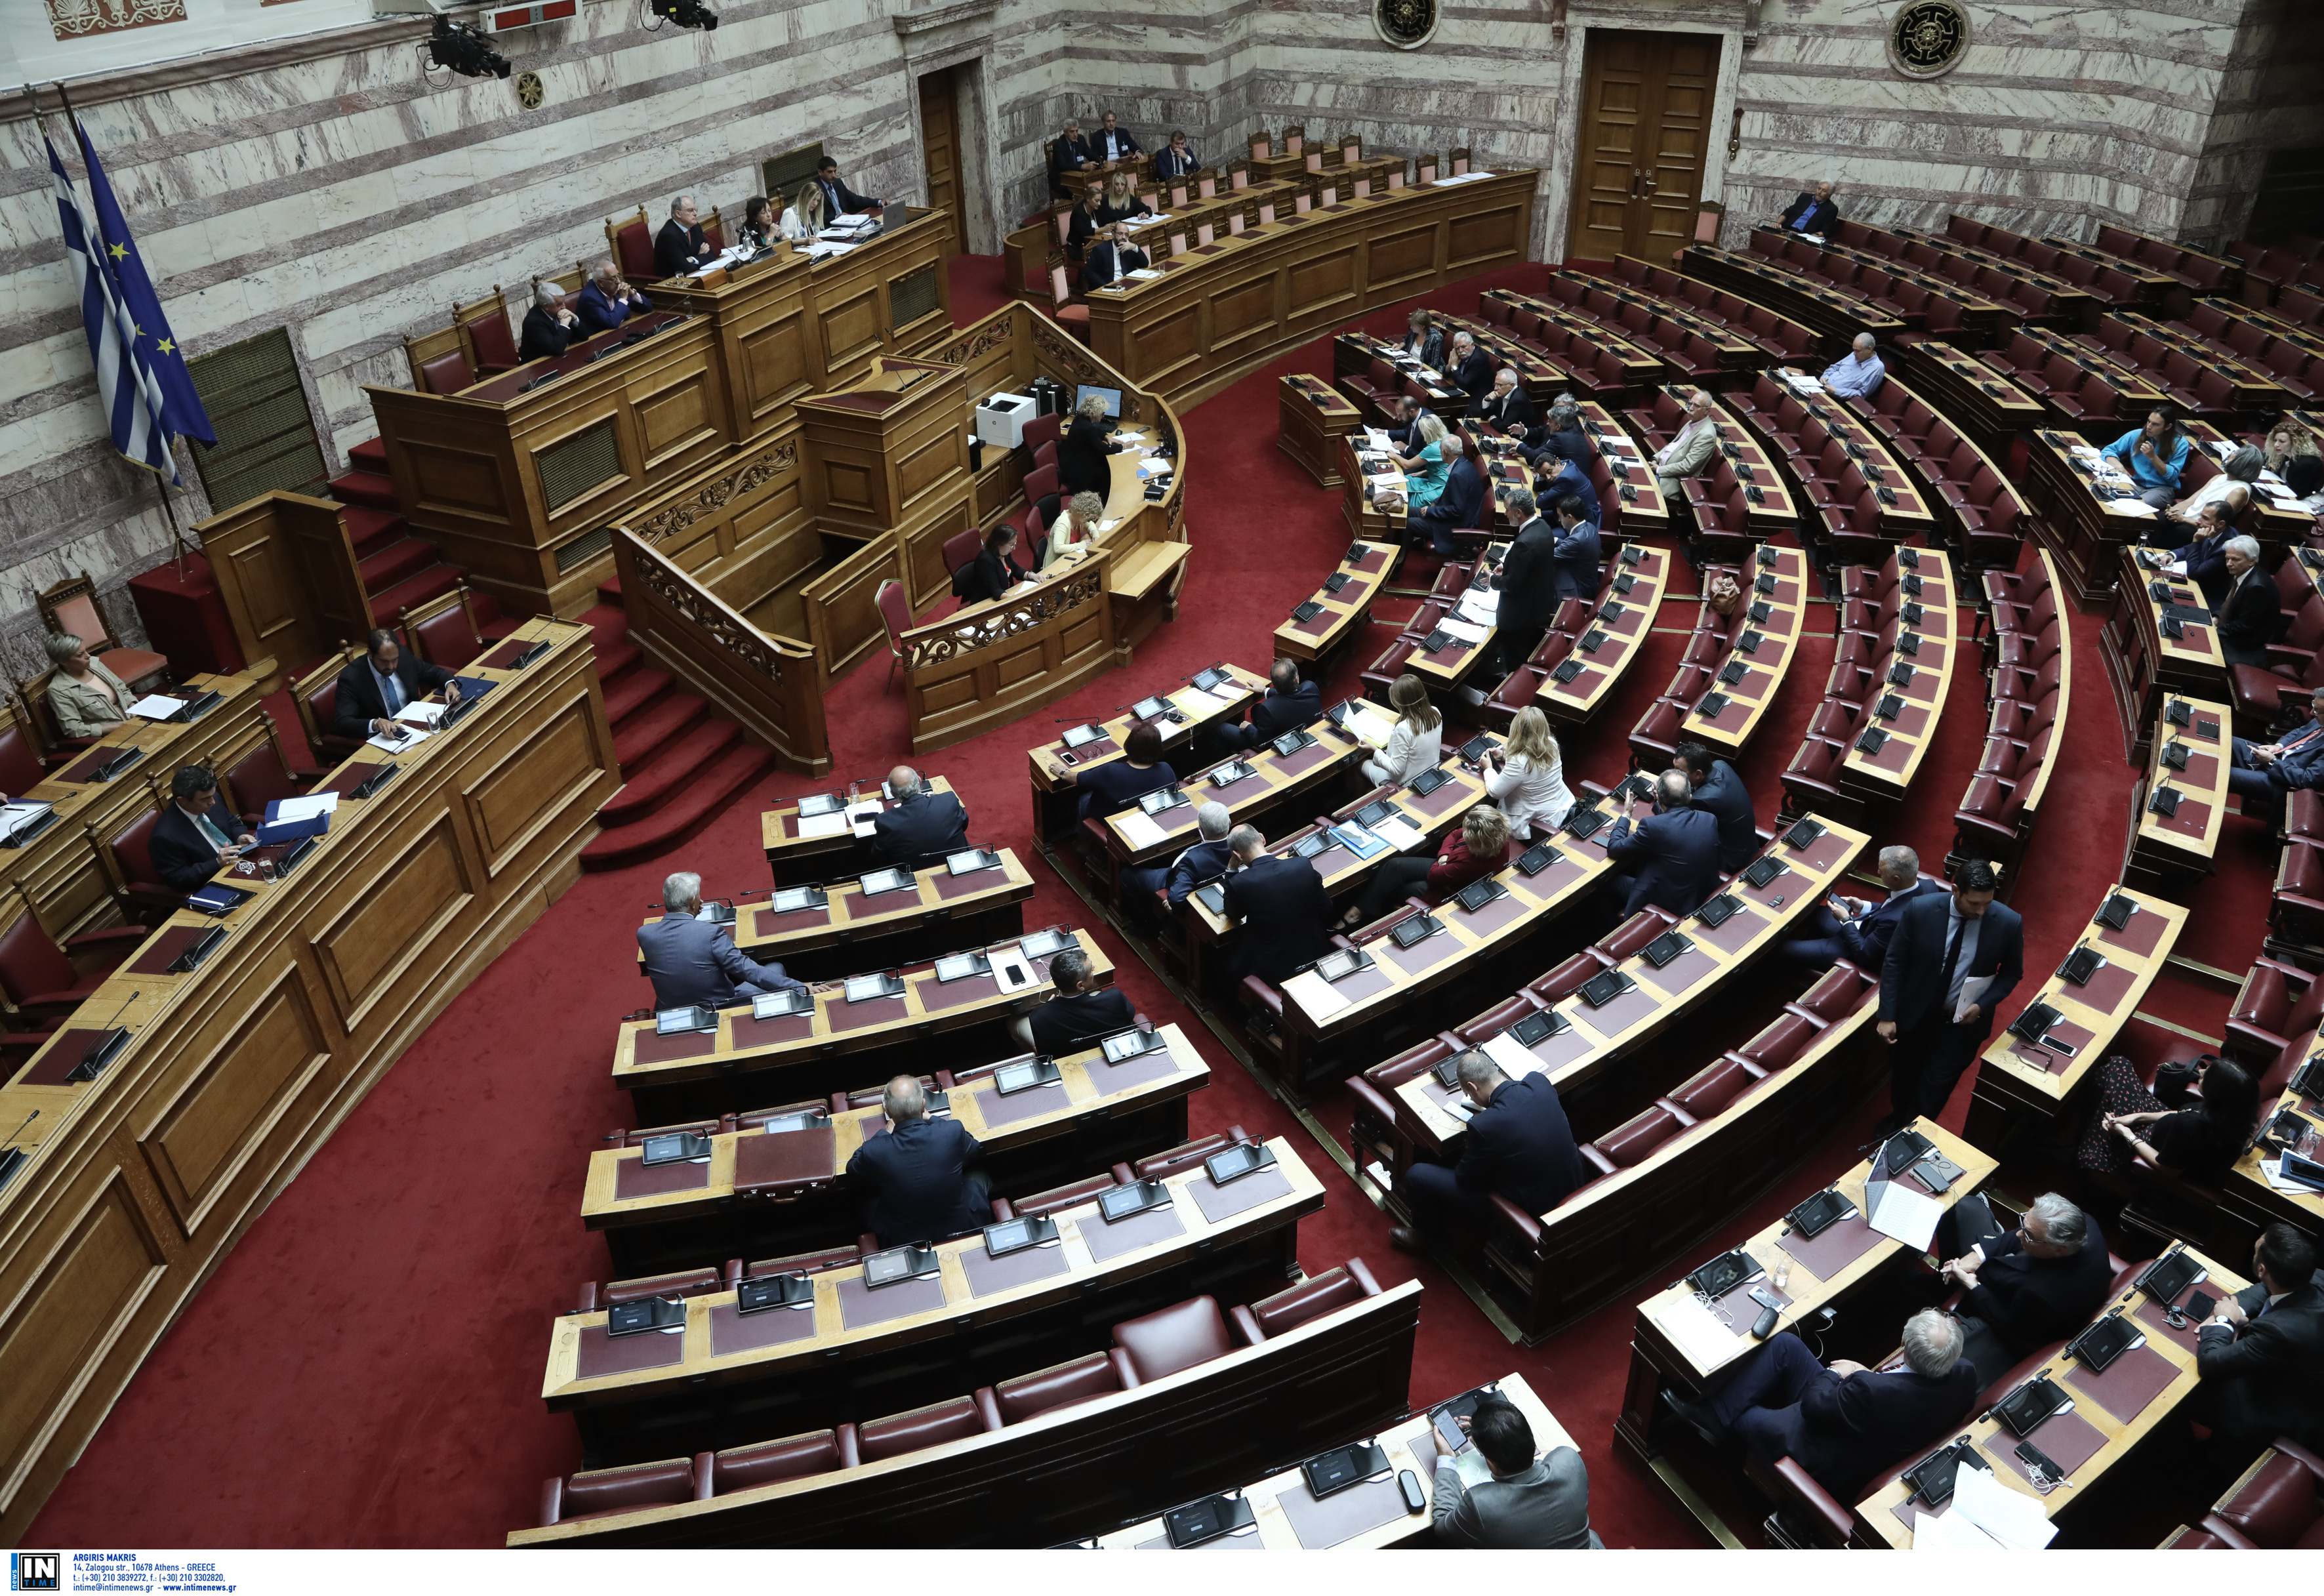 Έρχεται «μετωπική» κυβέρνησης-ΣΥΡΙΖΑ για ΔΕΗ και τρίτο μνημόνιο – Θα προχωρήσει η ΝΔ σε εξεταστικές επιτροπές;